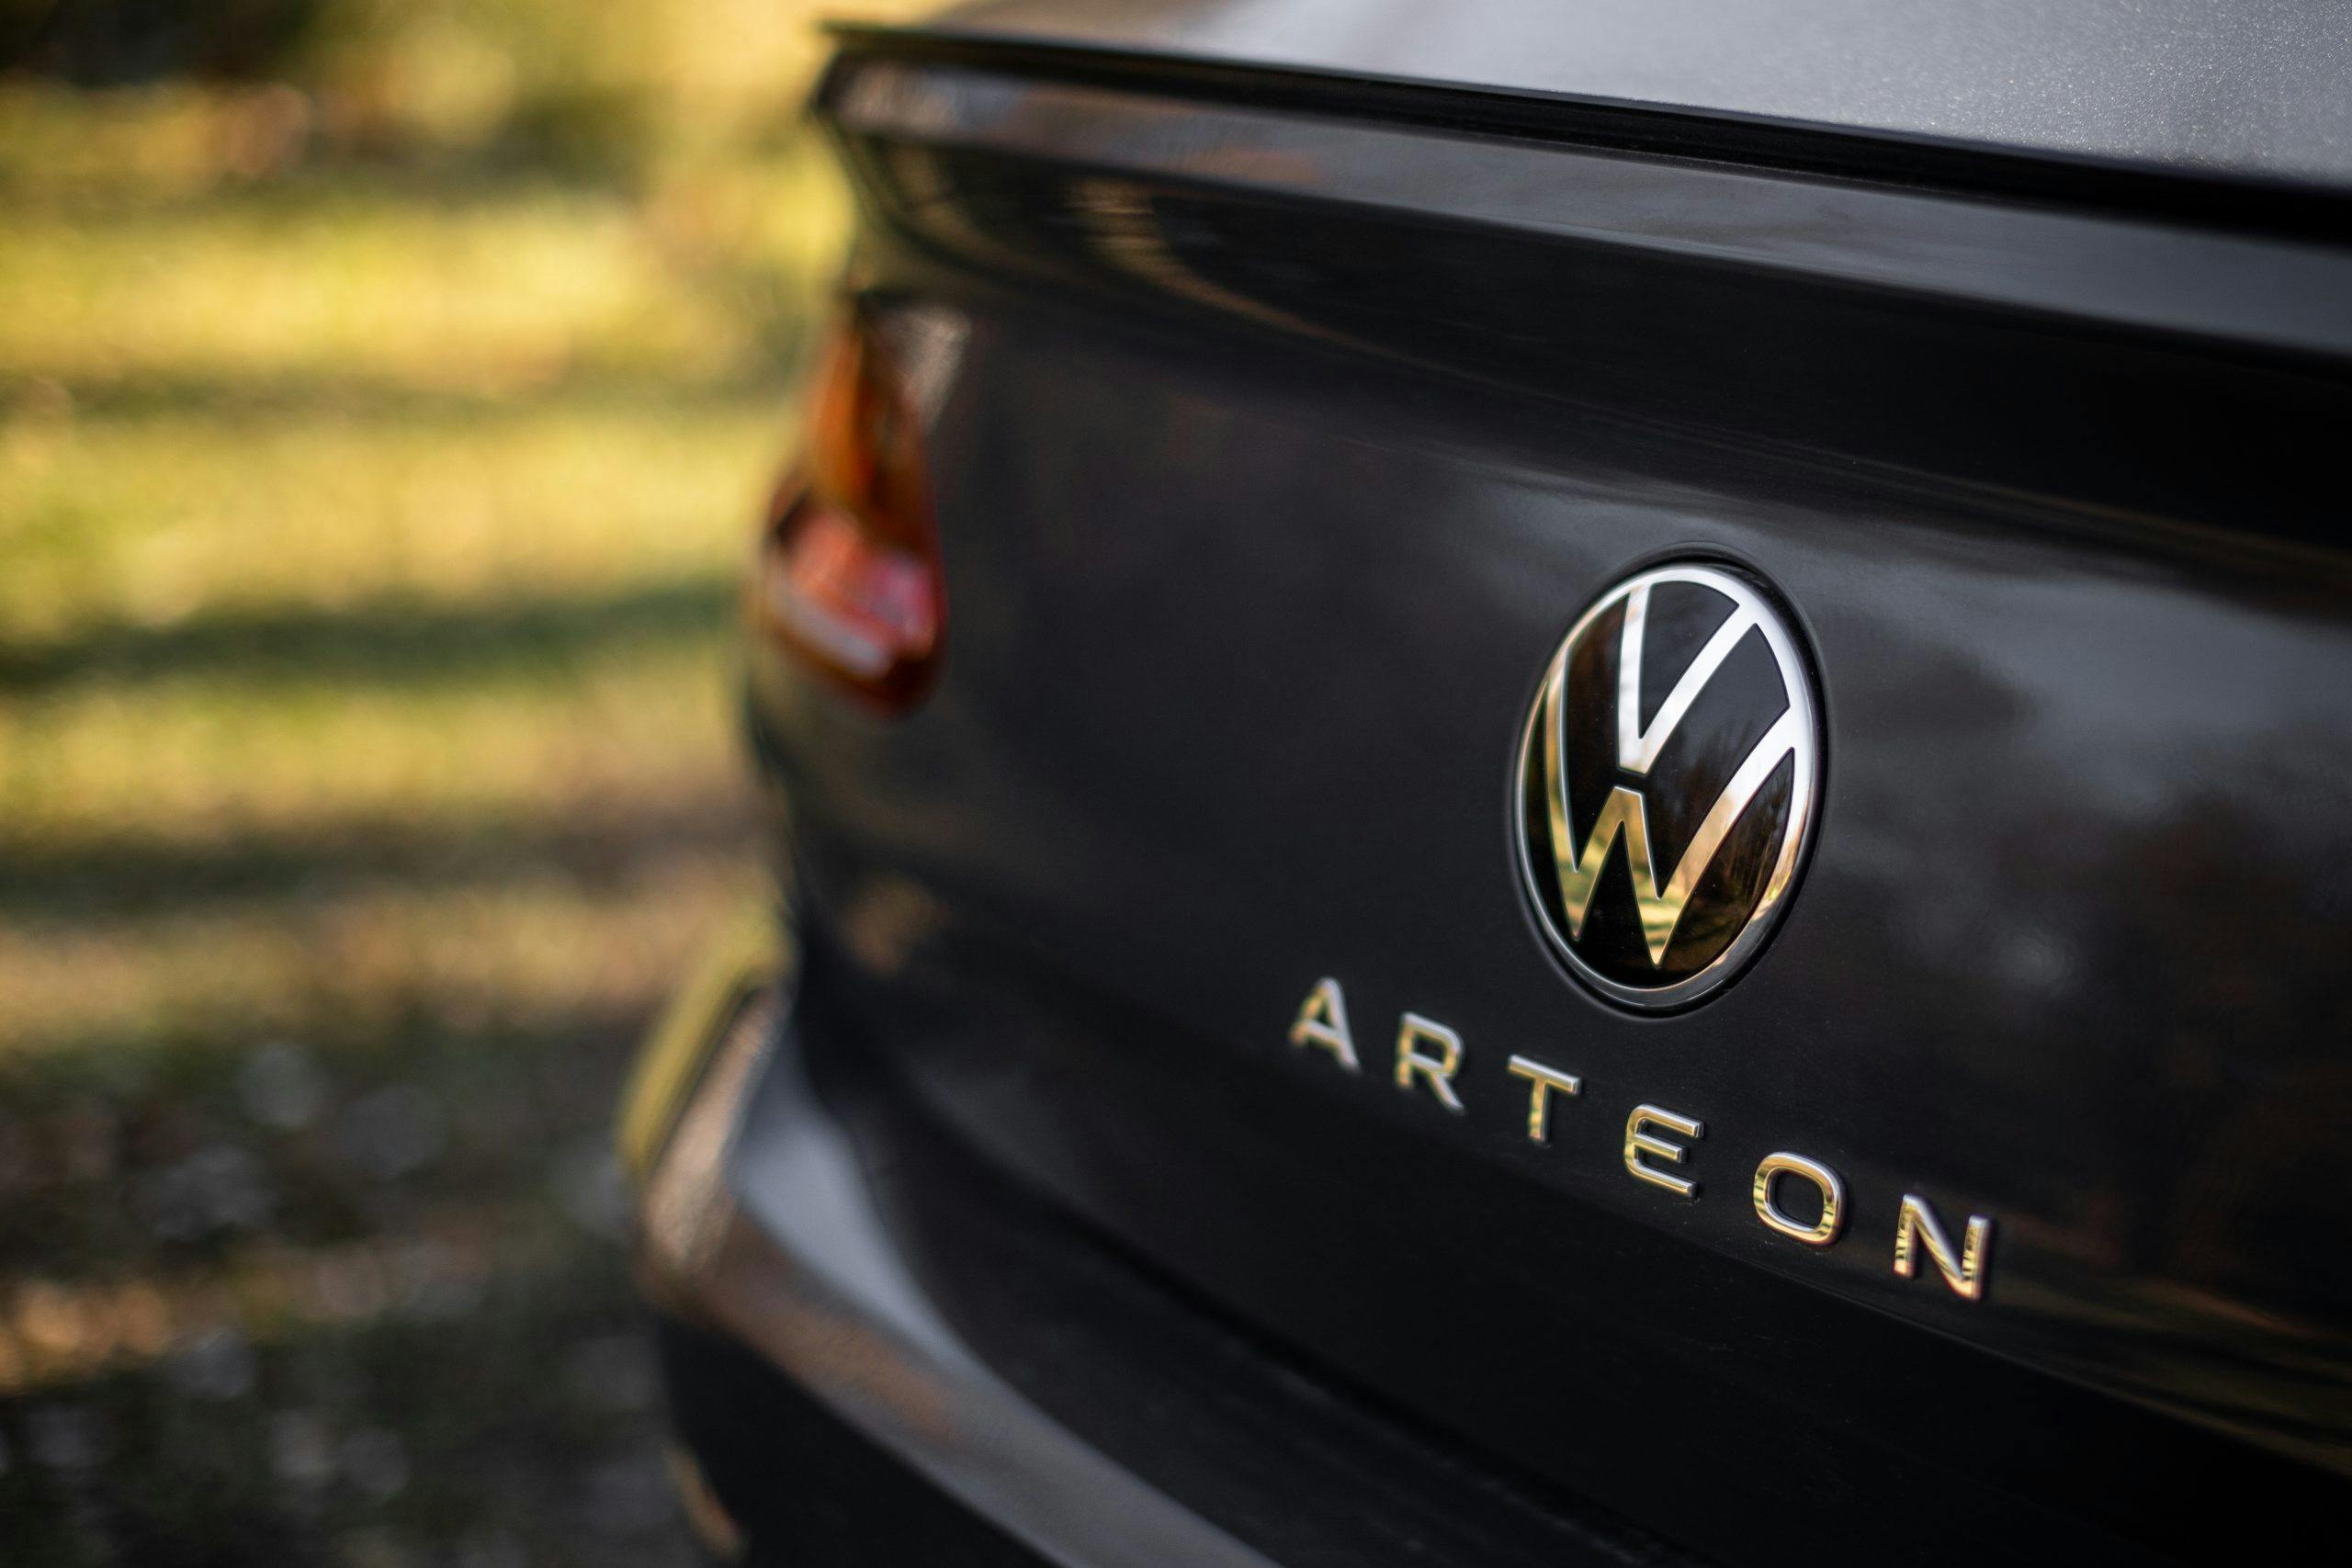 2022 Volkswagen Arteon rear badge